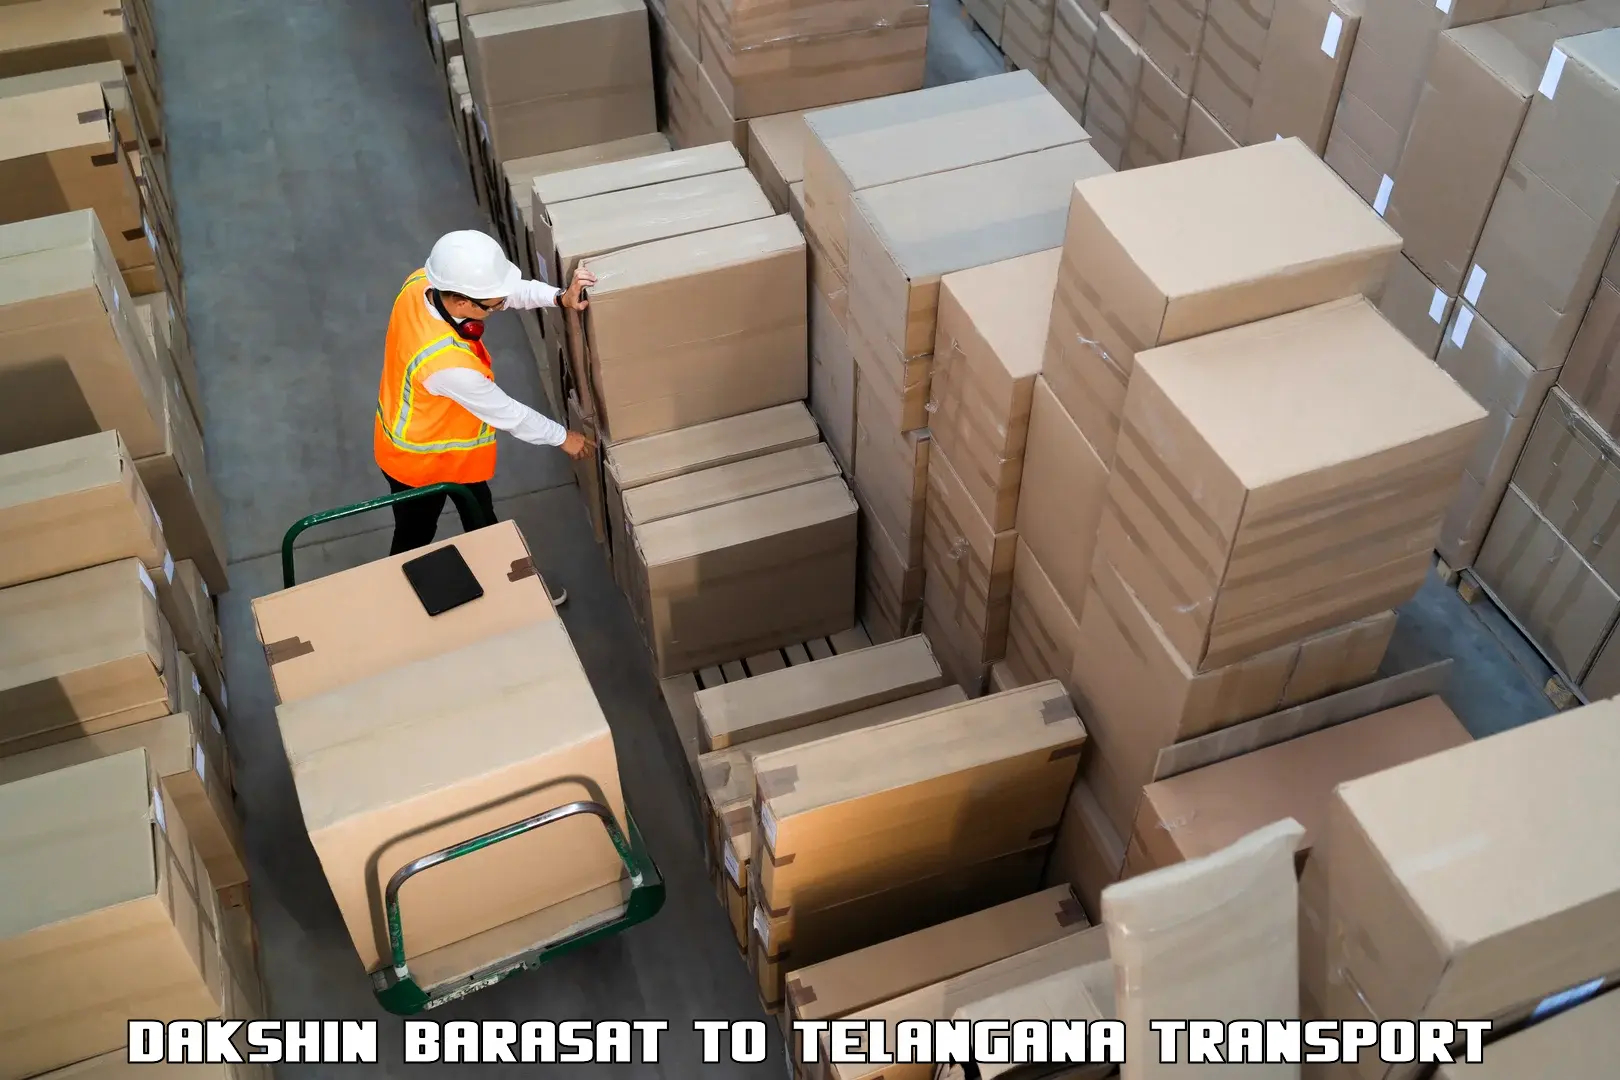 Air freight transport services Dakshin Barasat to Gadwal